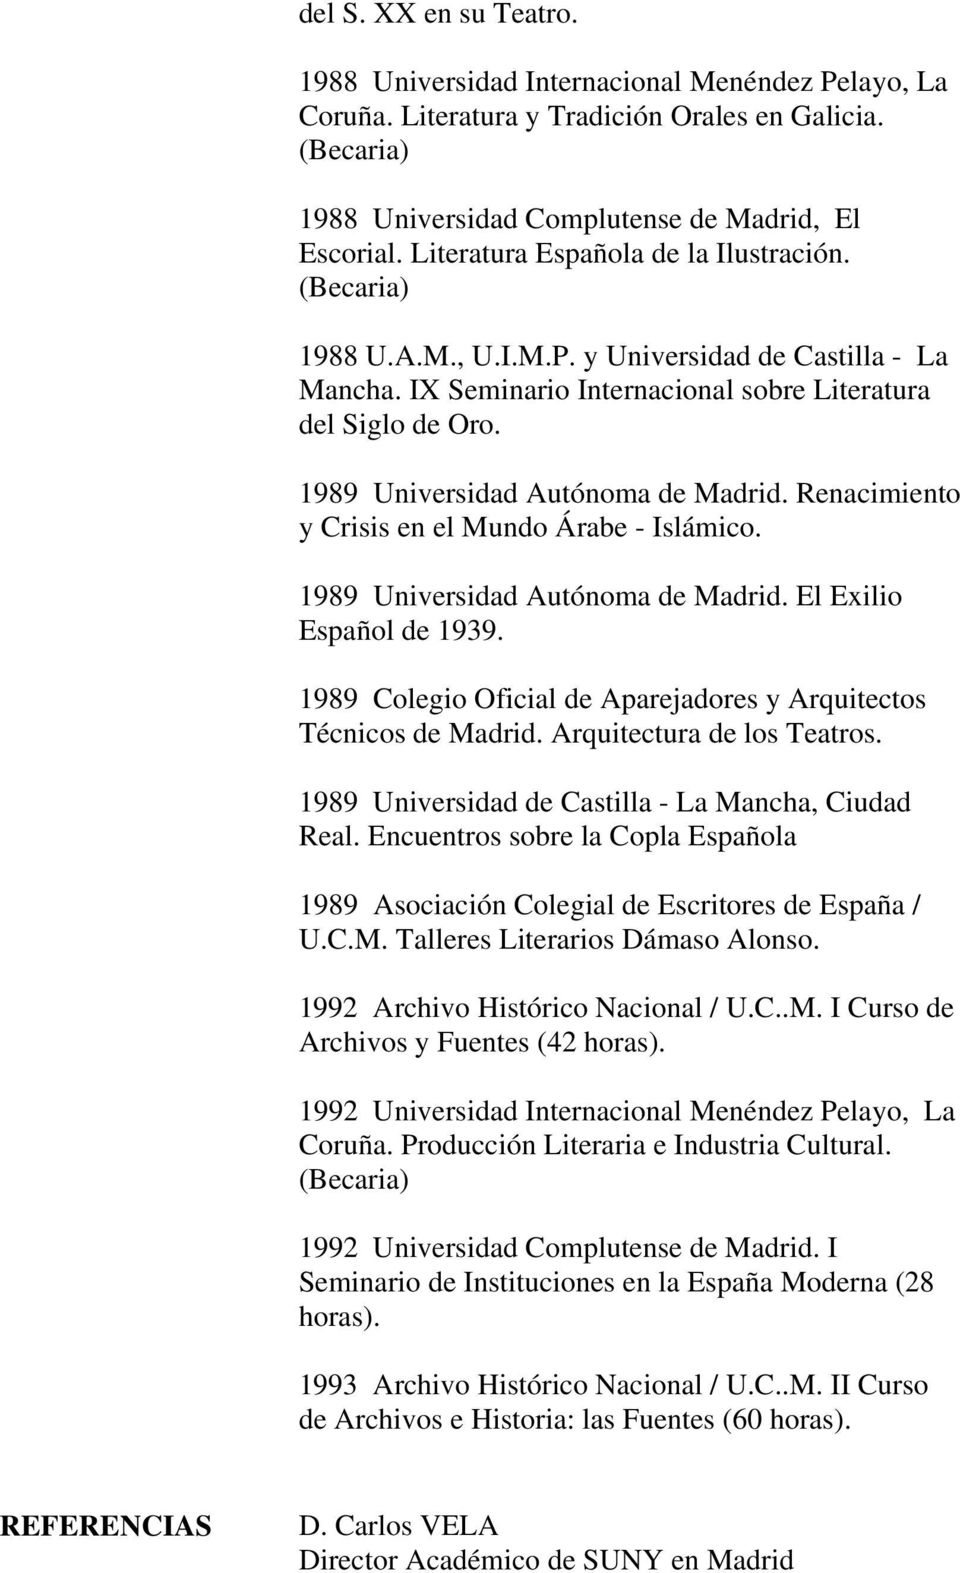 1989 Universidad Autónoma de Madrid. Renacimiento y Crisis en el Mundo Árabe - Islámico. 1989 Universidad Autónoma de Madrid. El Exilio Español de 1939.